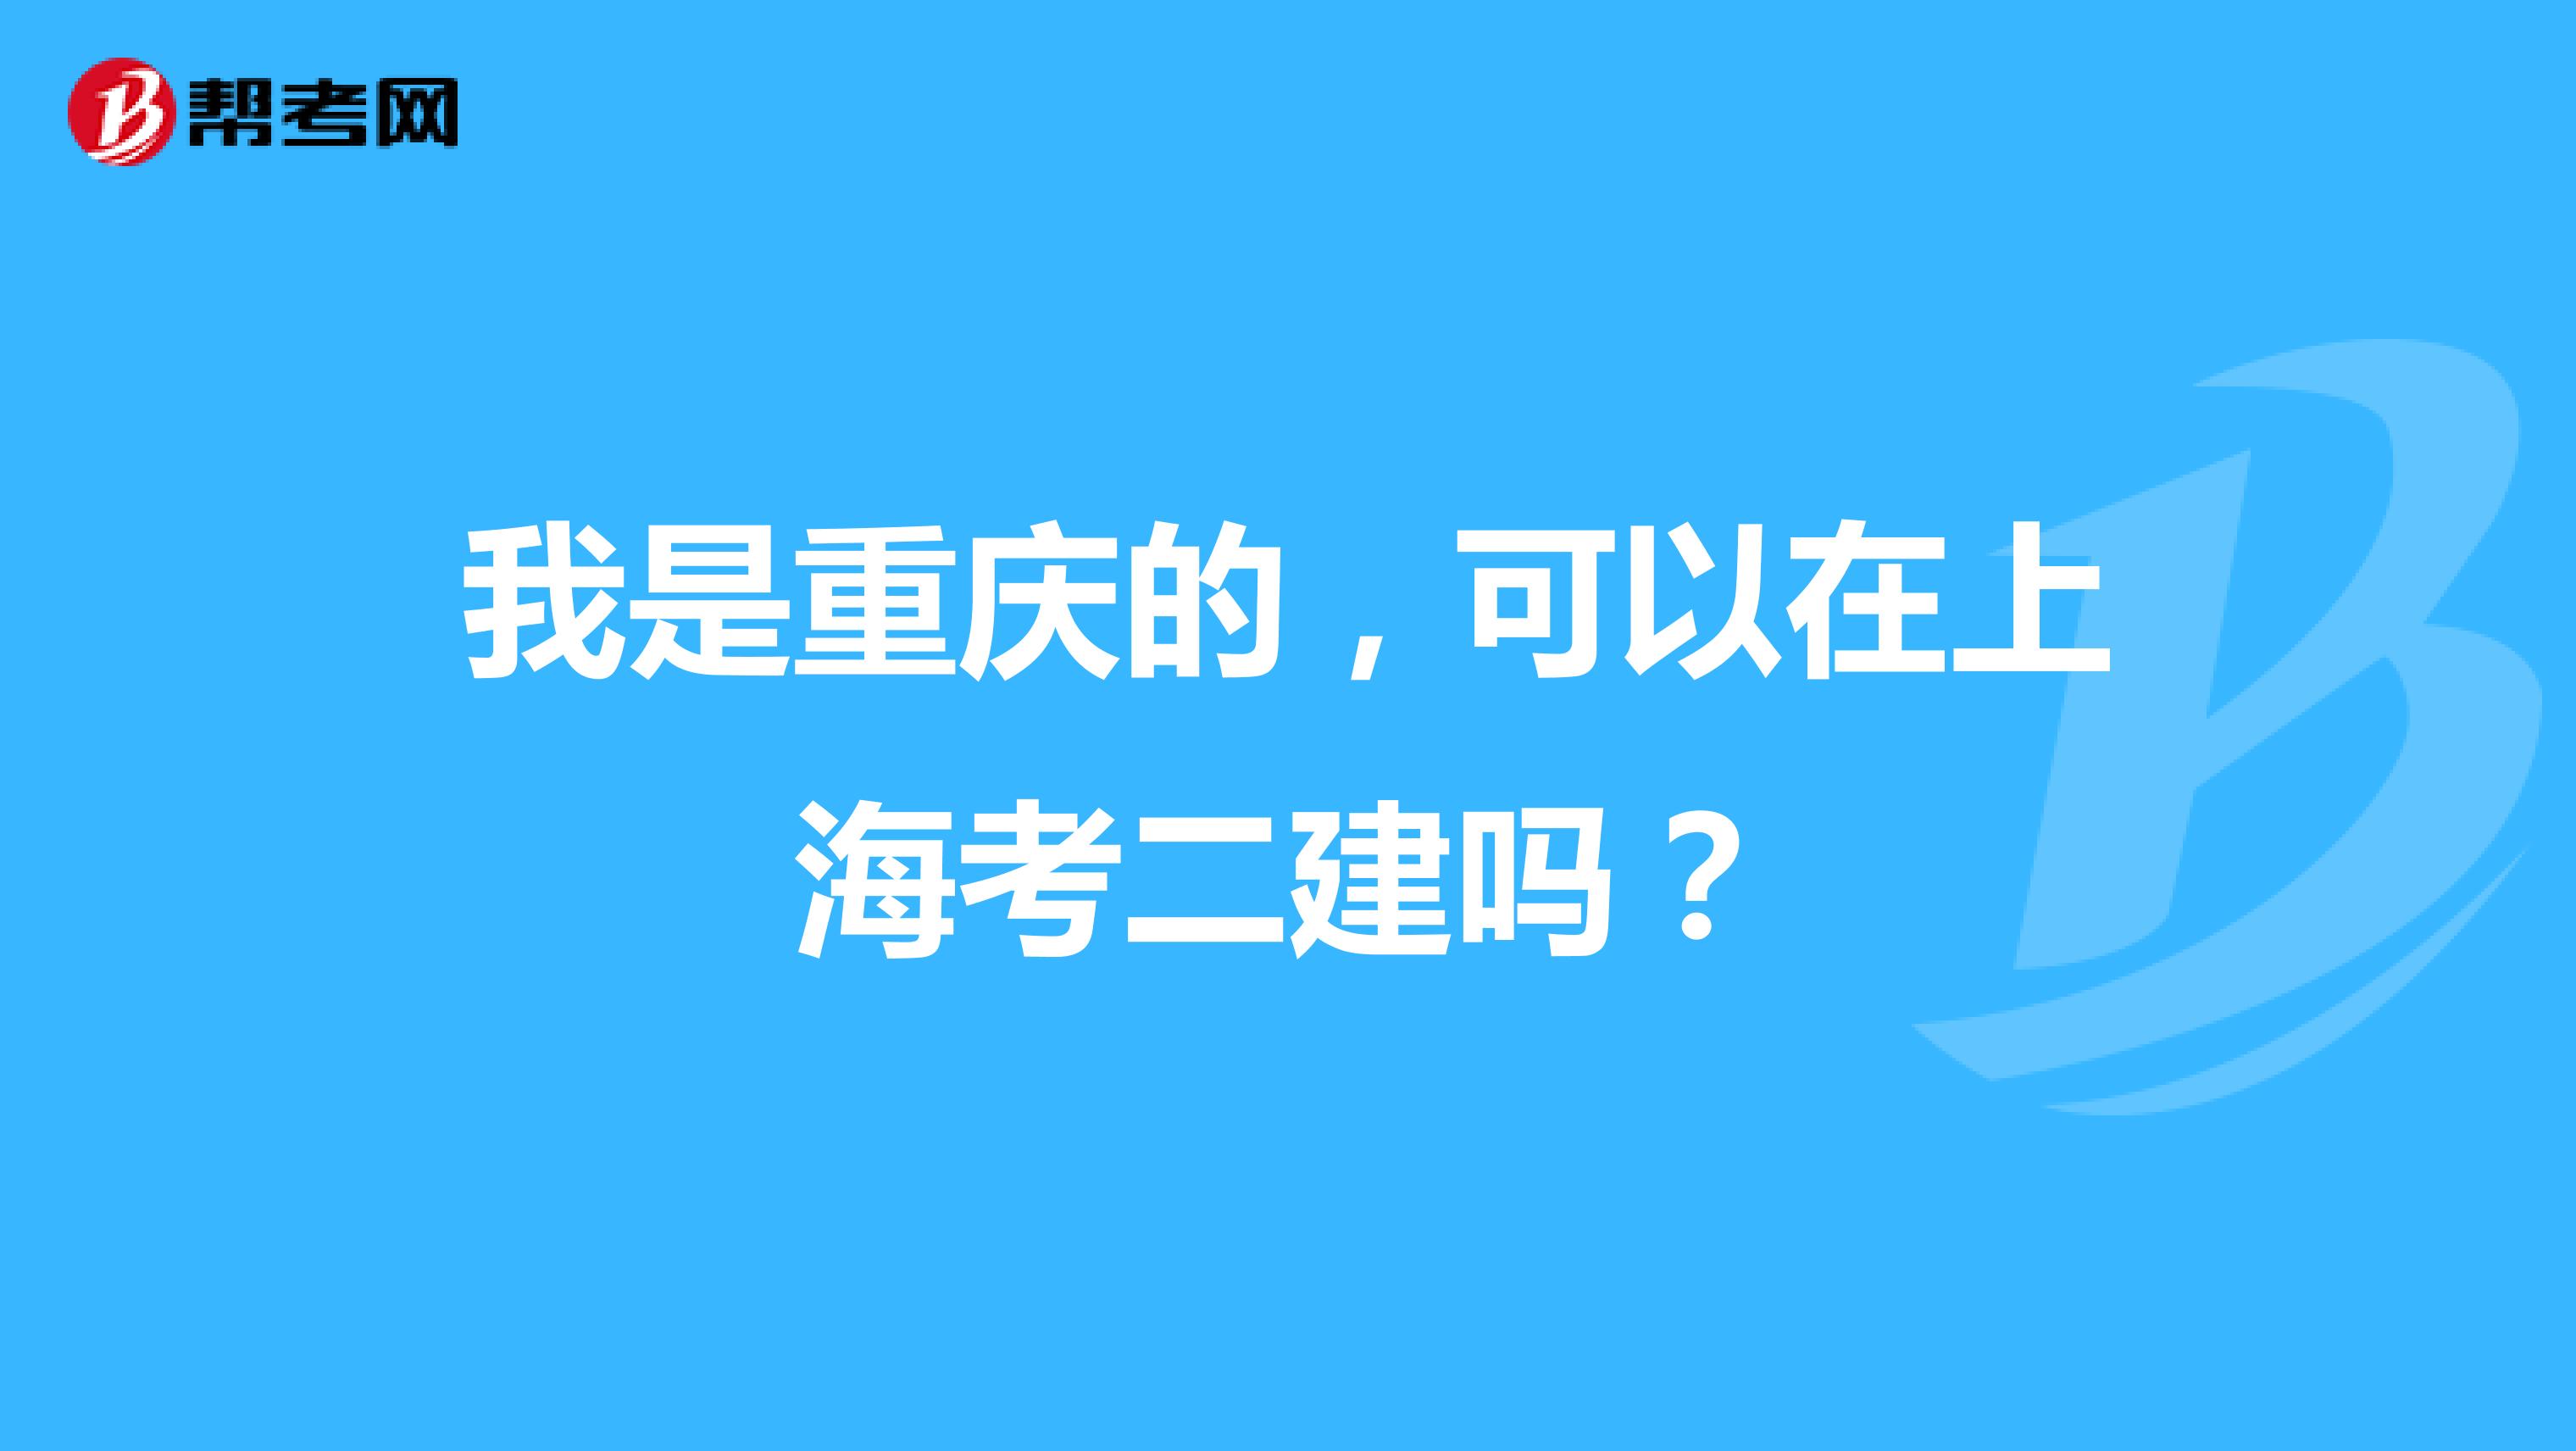 我是重庆的，可以在上海考二建吗？